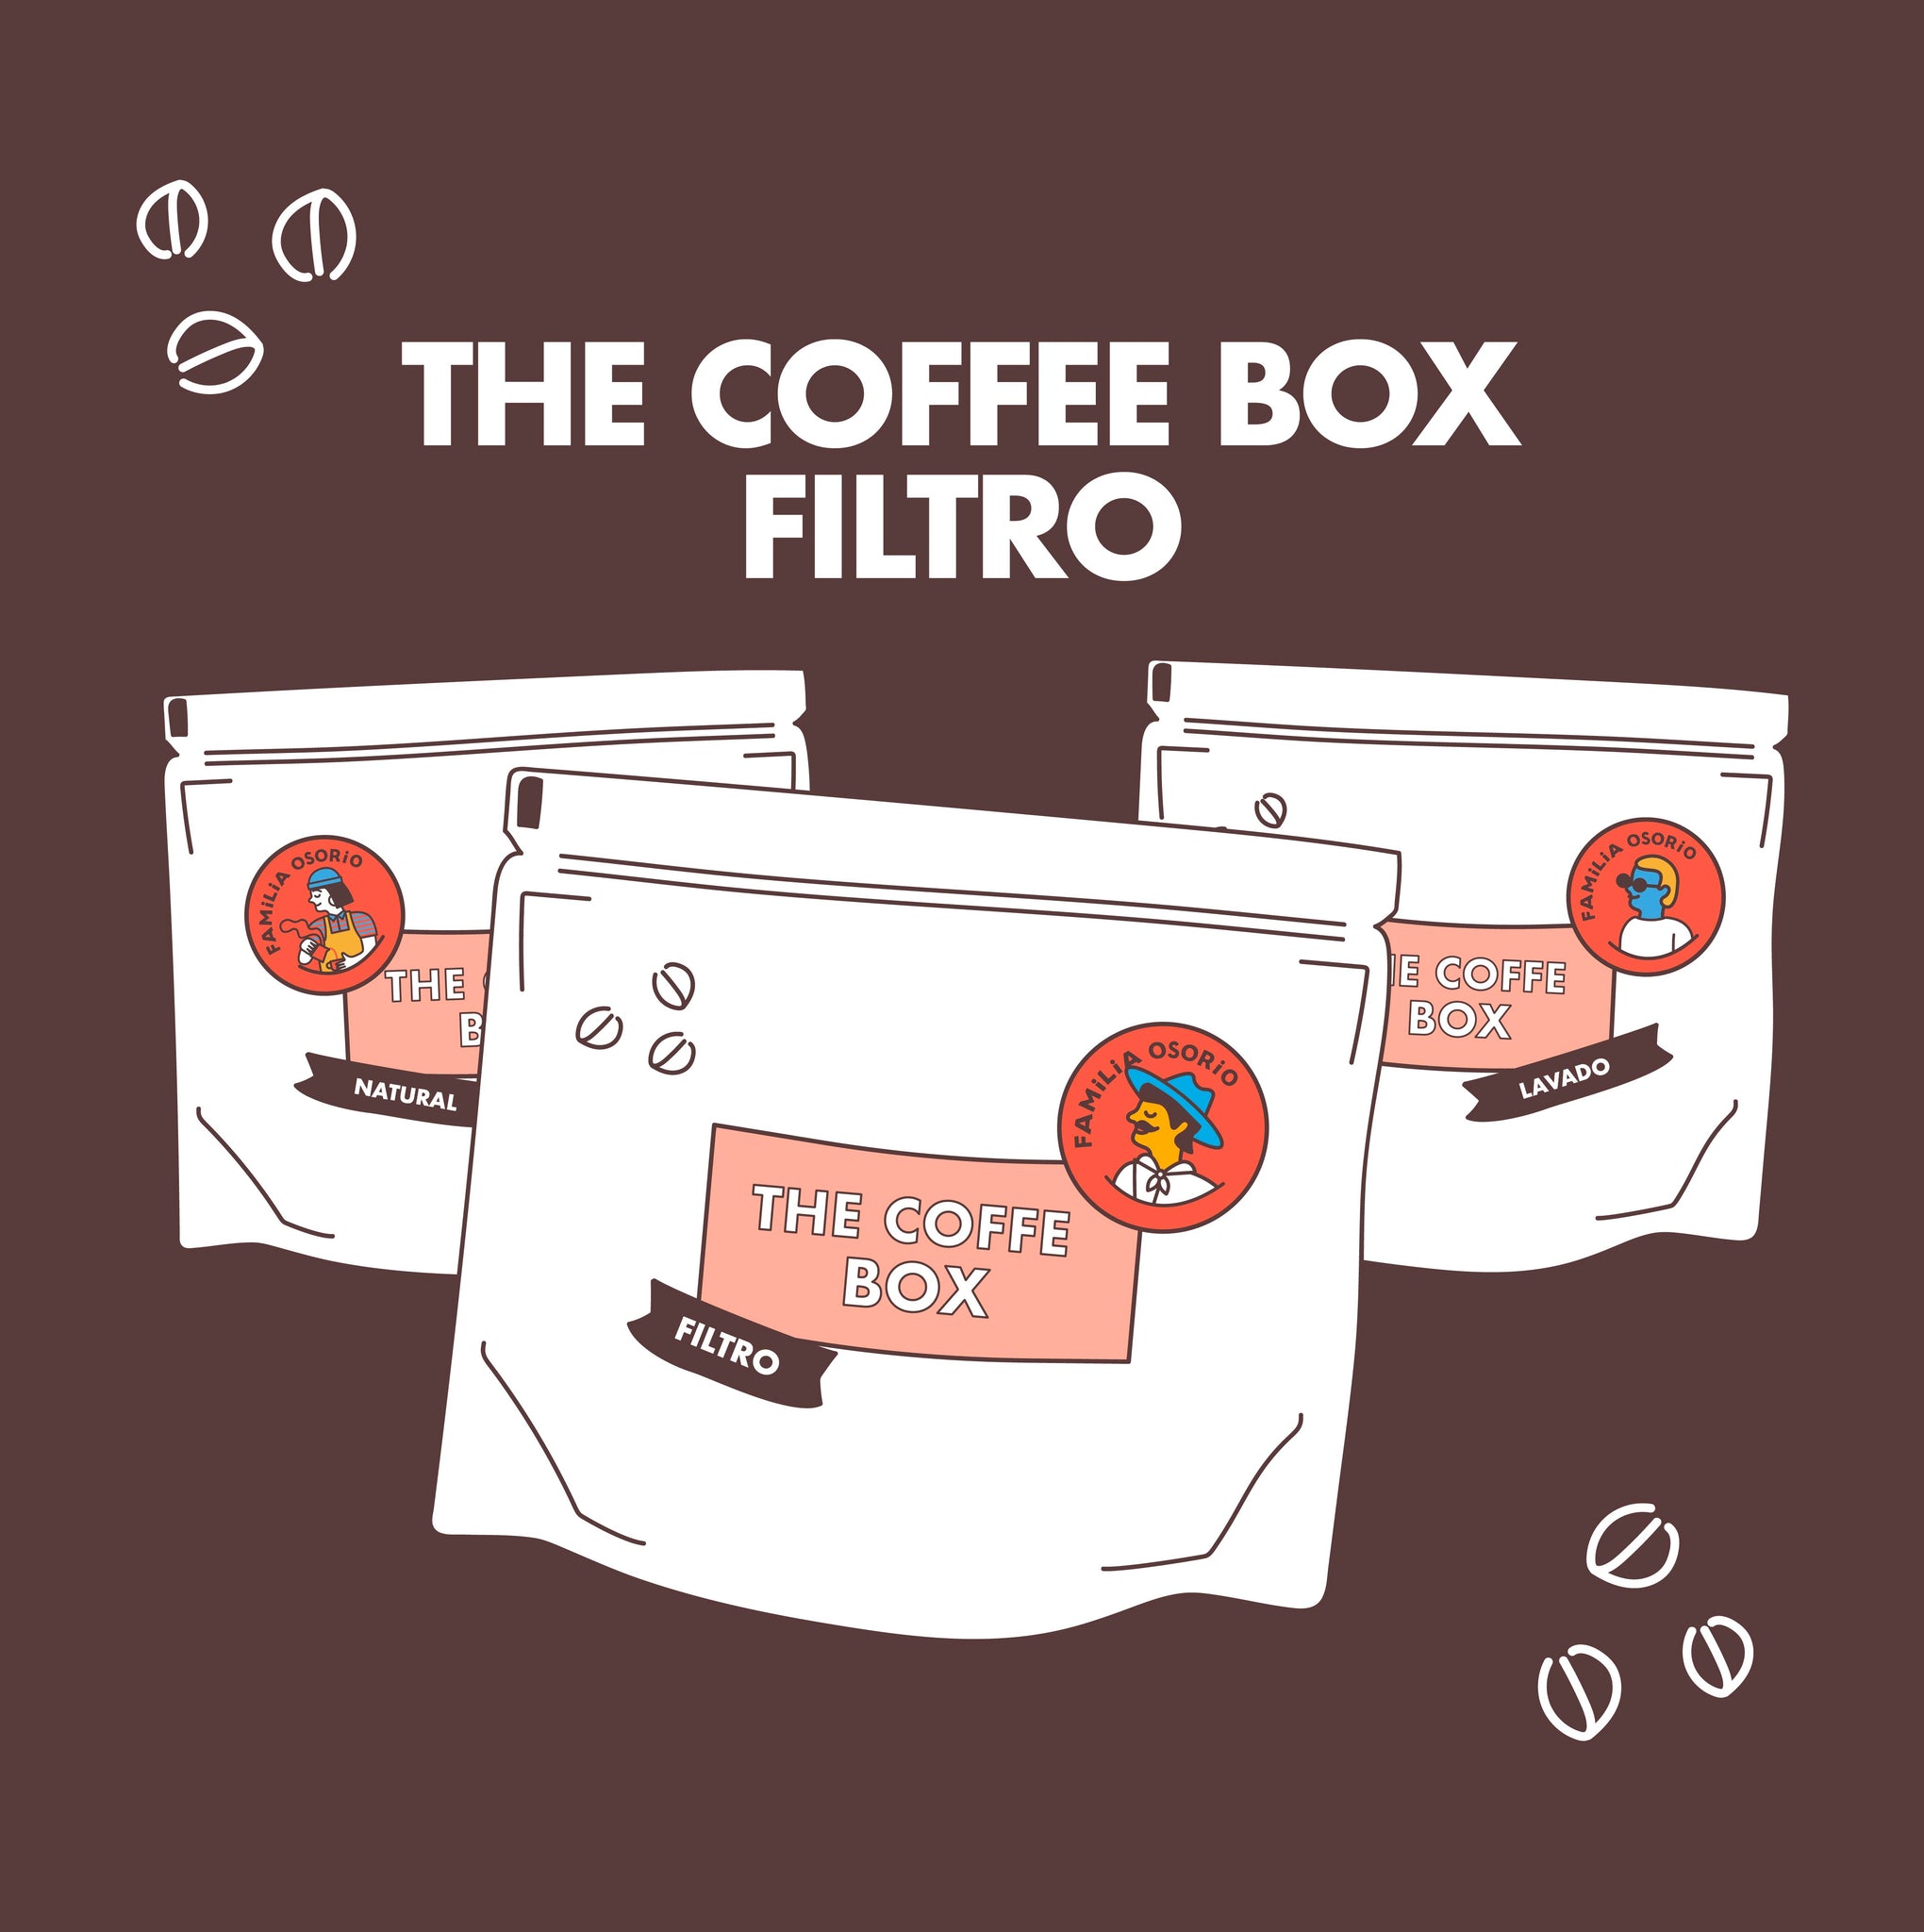 THE COFFEE BOX FILTRO